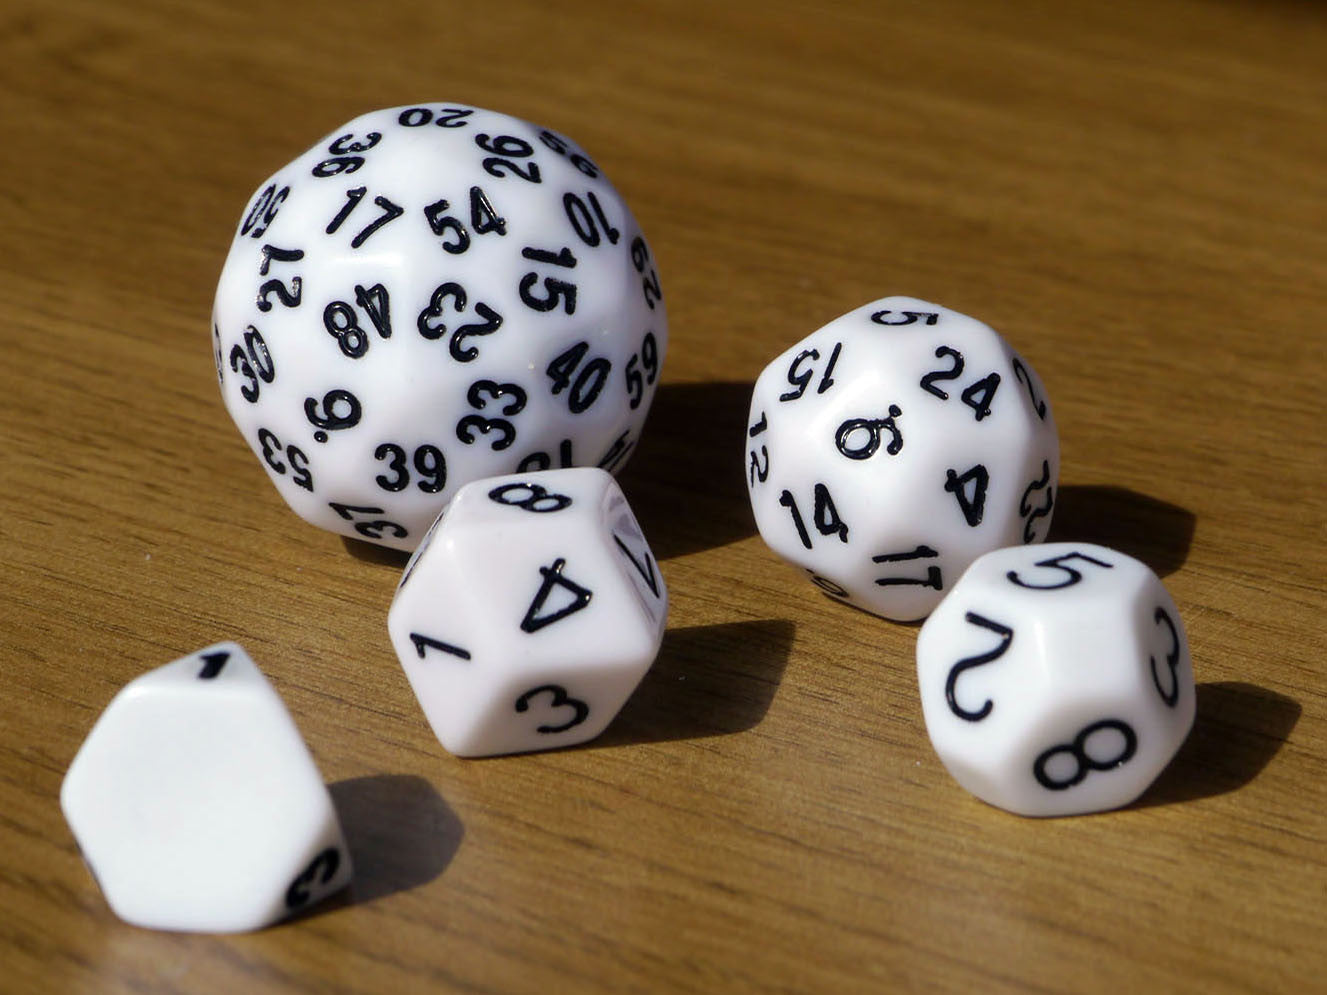 D20 inside a D20 dice – Maths Gear - Mathematical curiosities